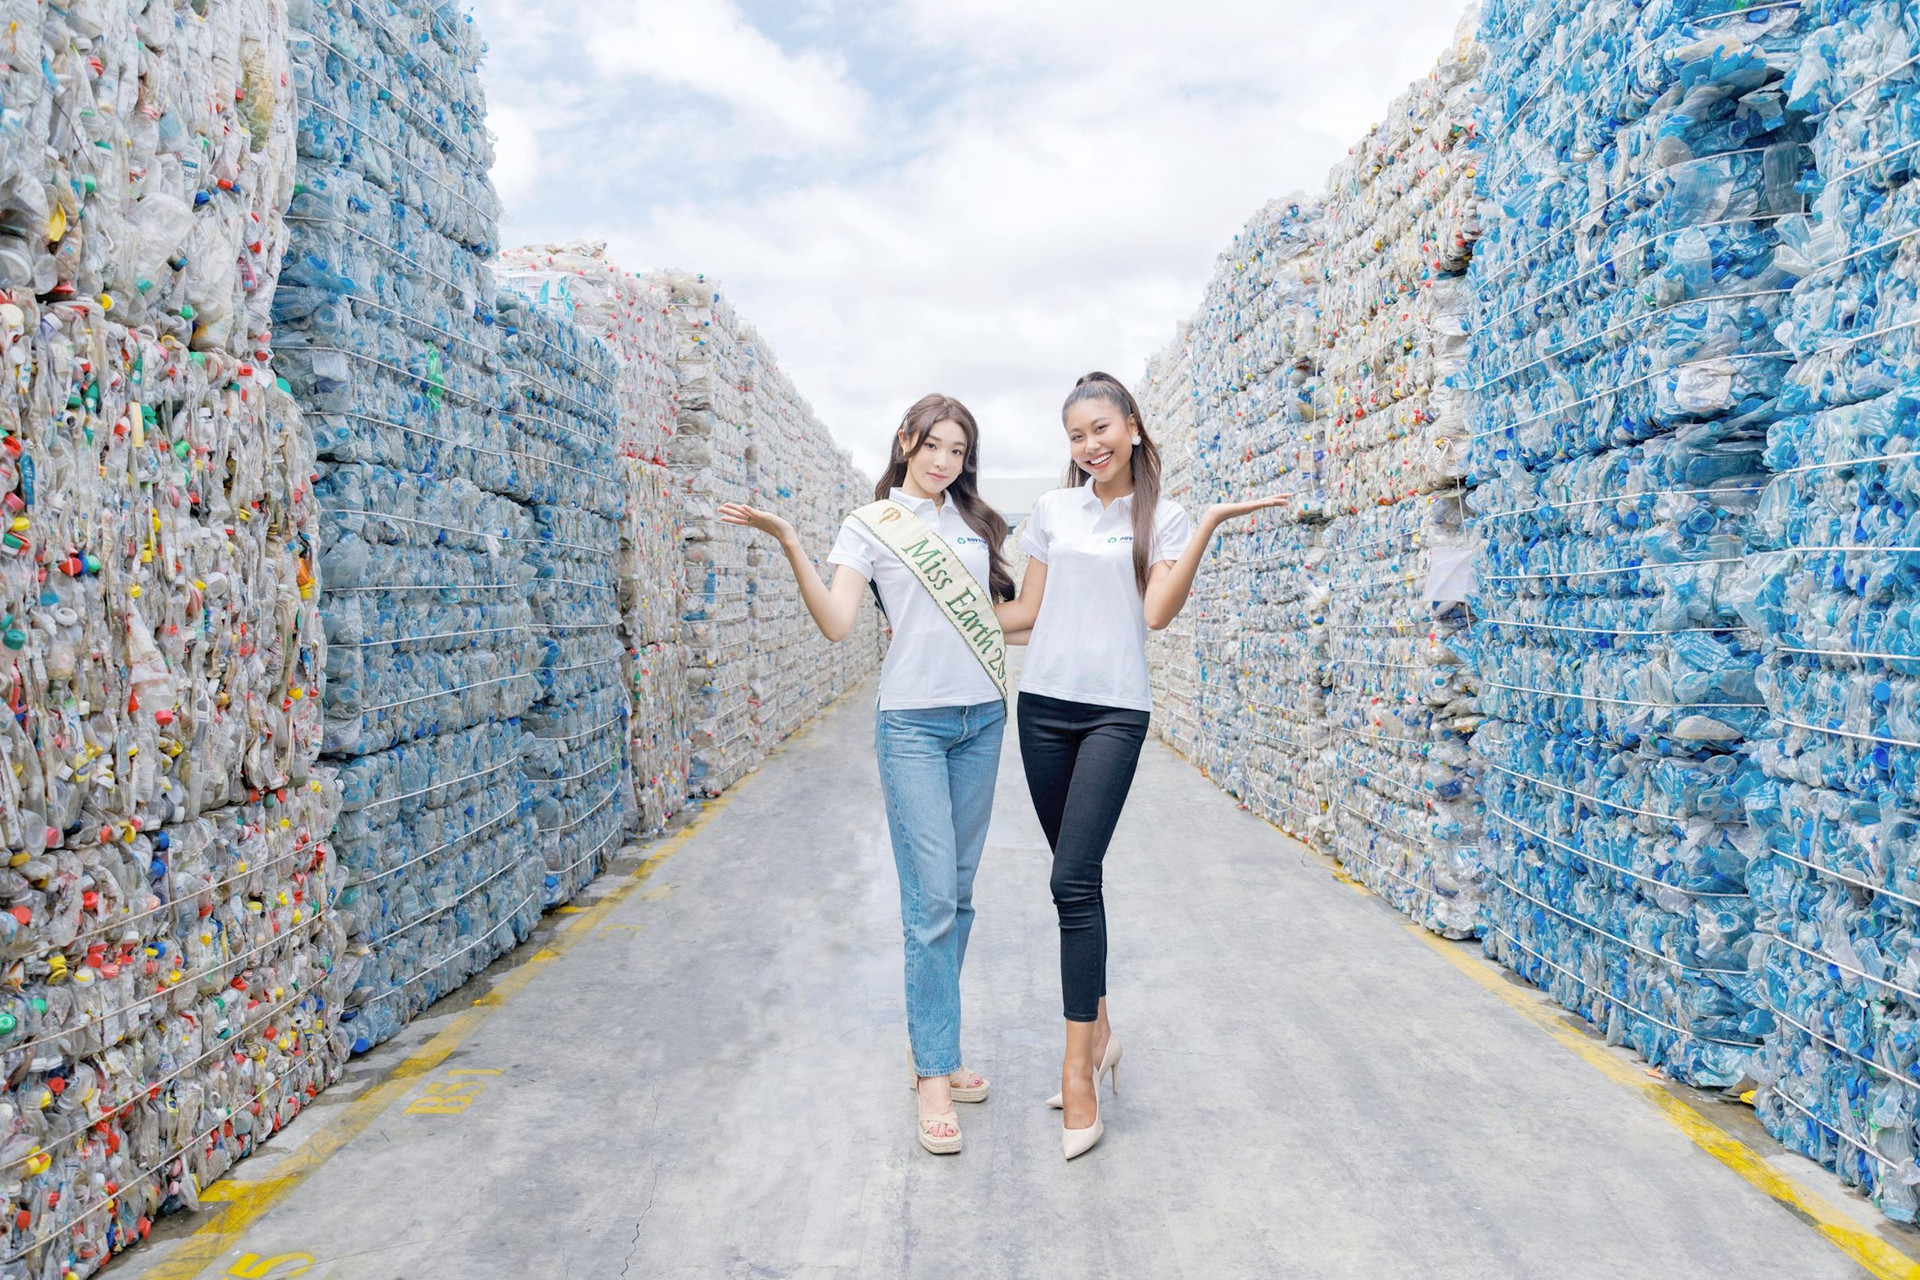 Doanh nghiệp biến rác nhựa ở Việt Nam thành nhựa "xịn" ở Mỹ, xuất khẩu 4.000 tấn/năm - Ảnh 4.